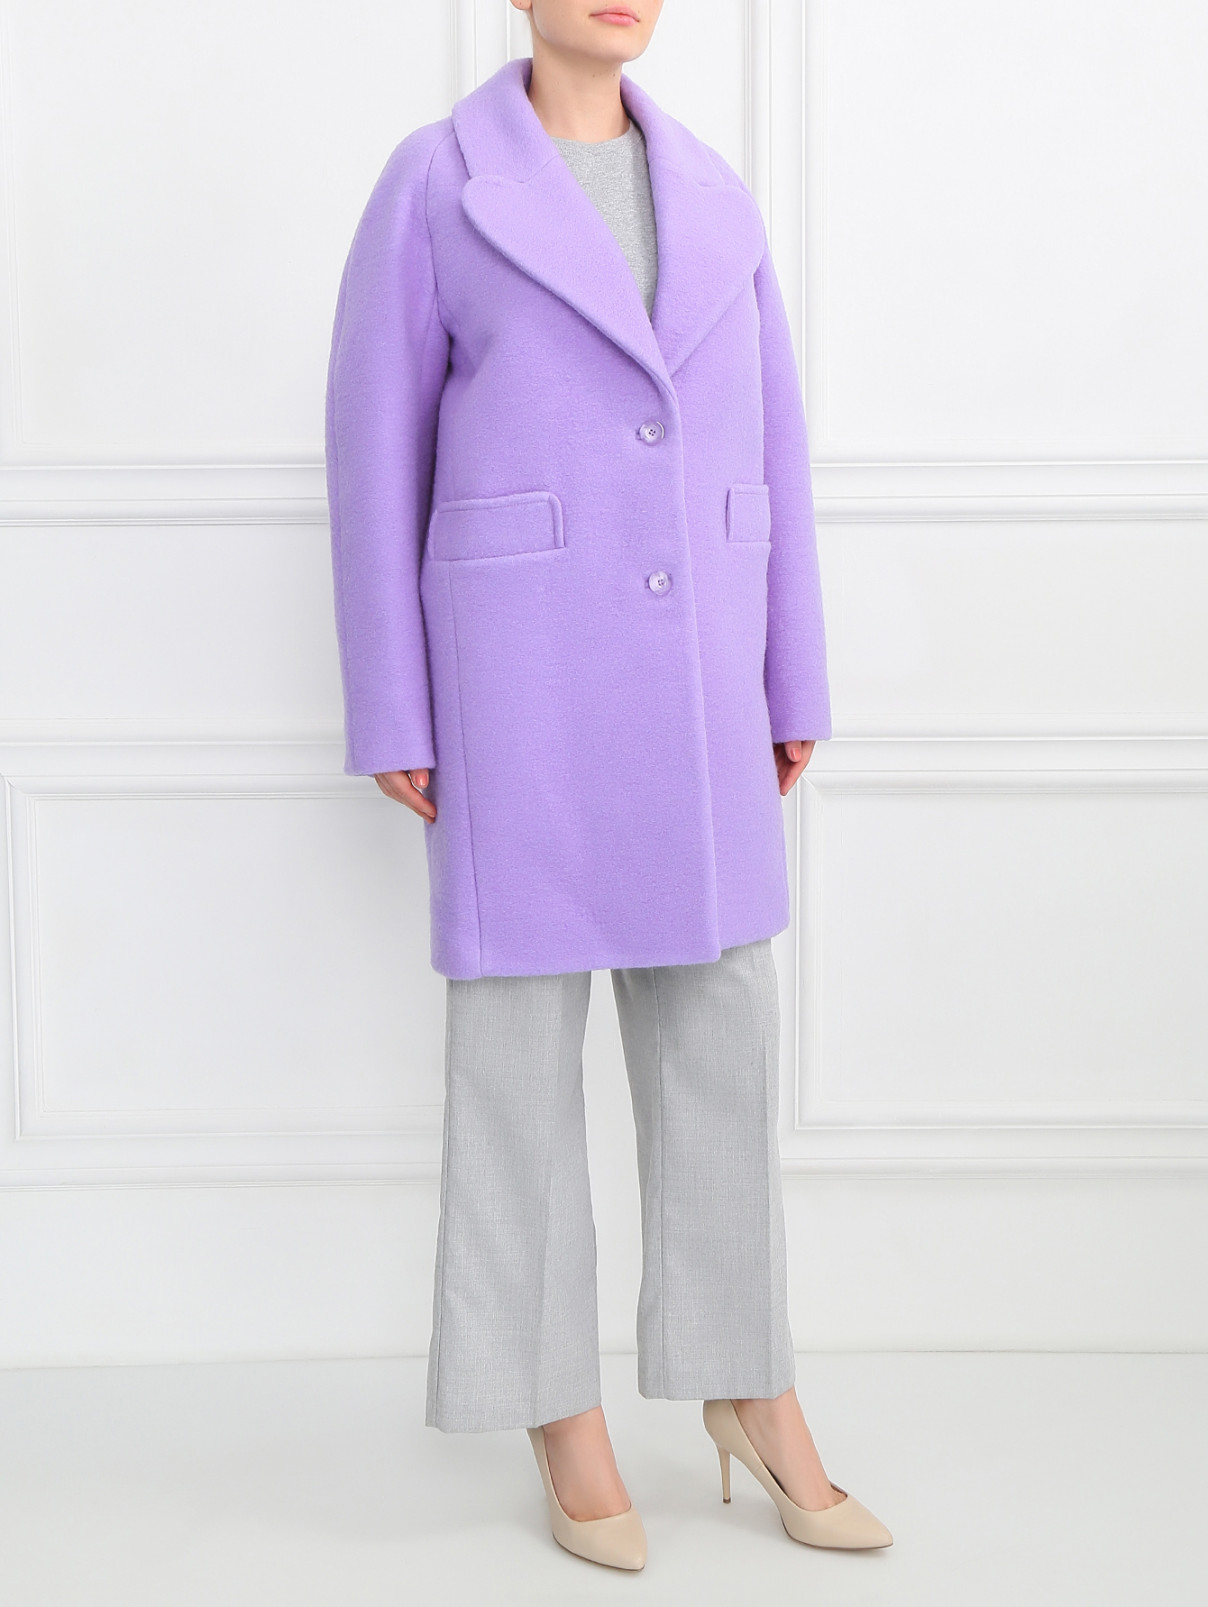 Пальто из шерсти Carven  –  Модель Общий вид  – Цвет:  Фиолетовый